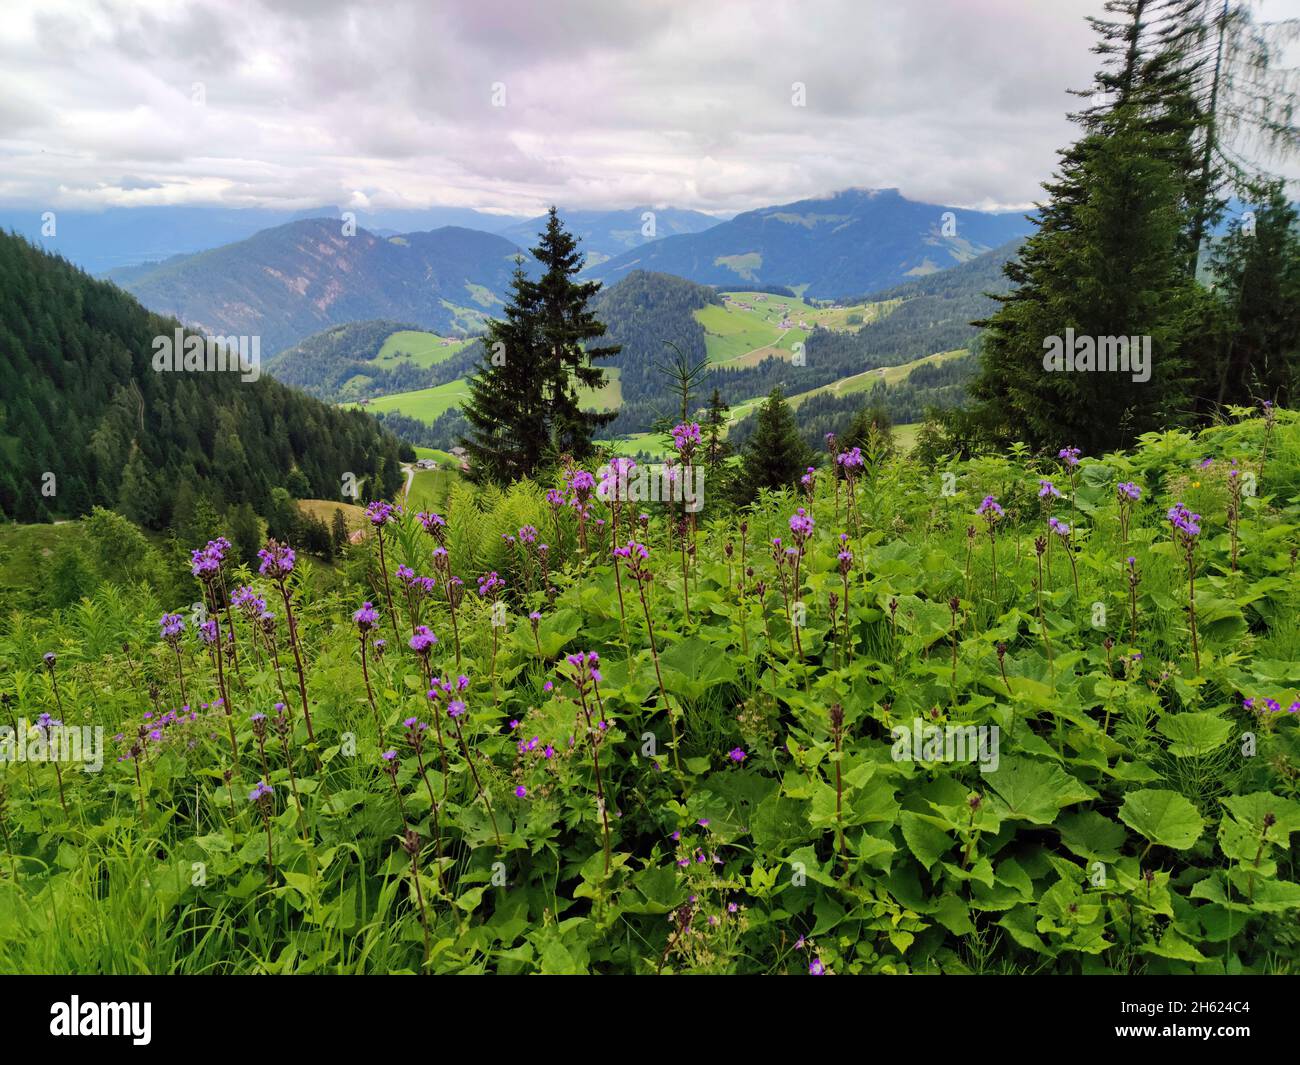 la lechuga alpina es un indicador de alto contenido de nutrientes, bosque de montaña en la región de brixlegg, tirol Foto de stock